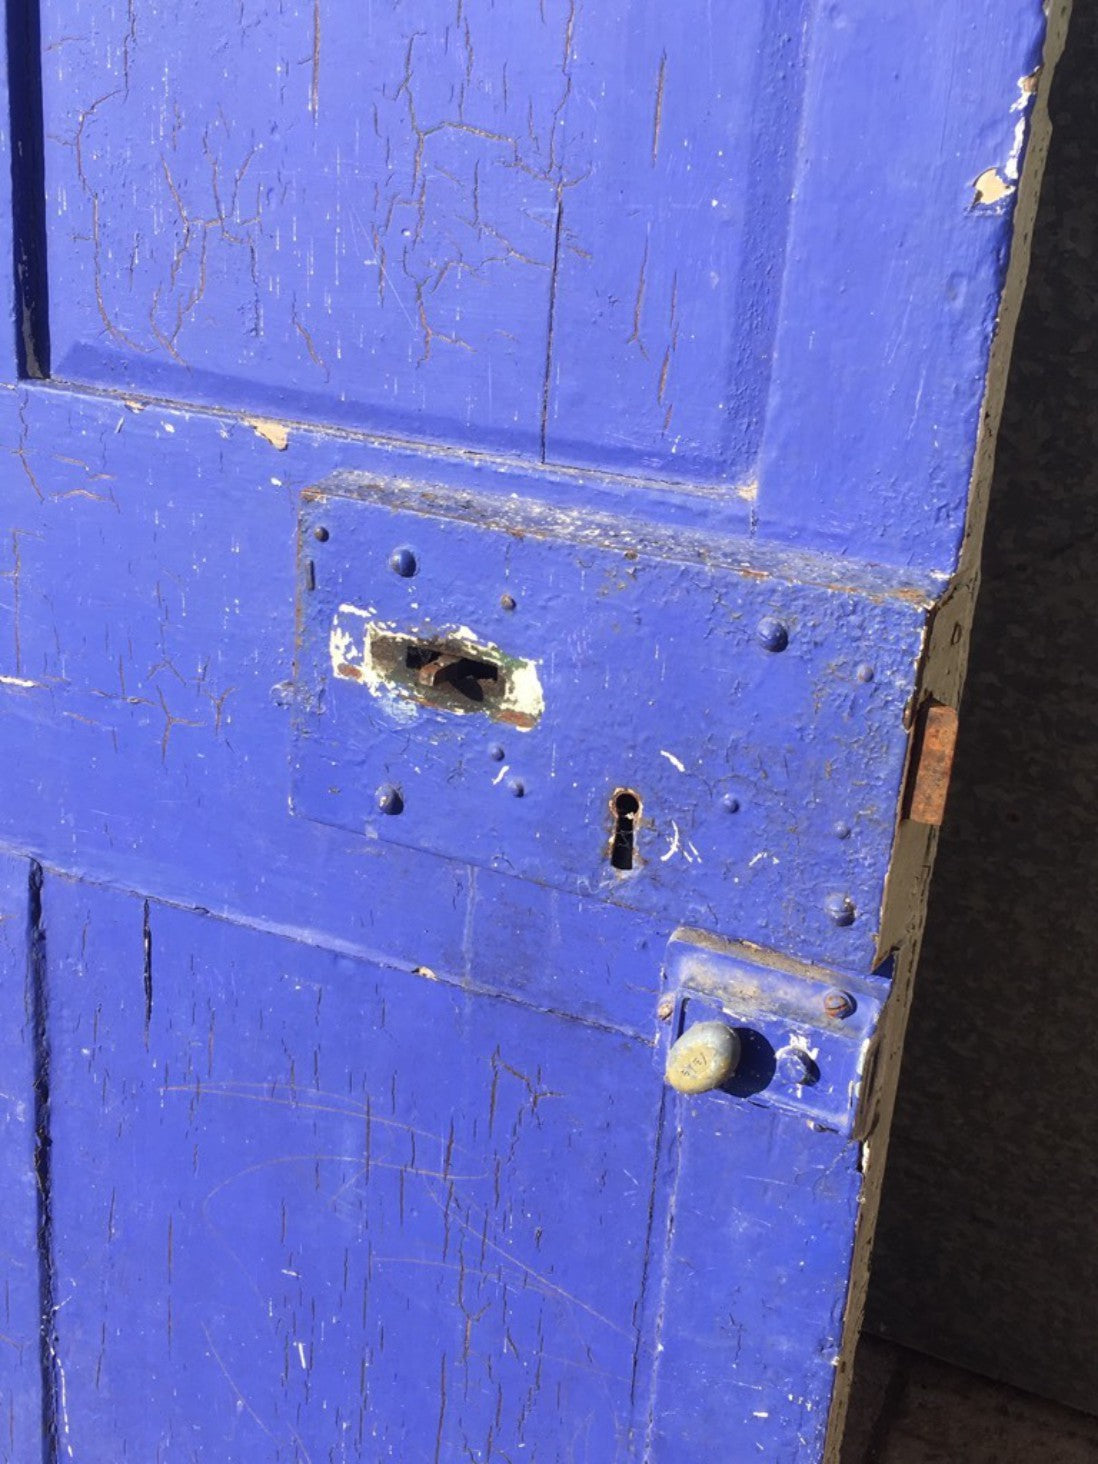 37”x75” Reclaimed Victorian Pine External Front Door Painted Cream & Blue